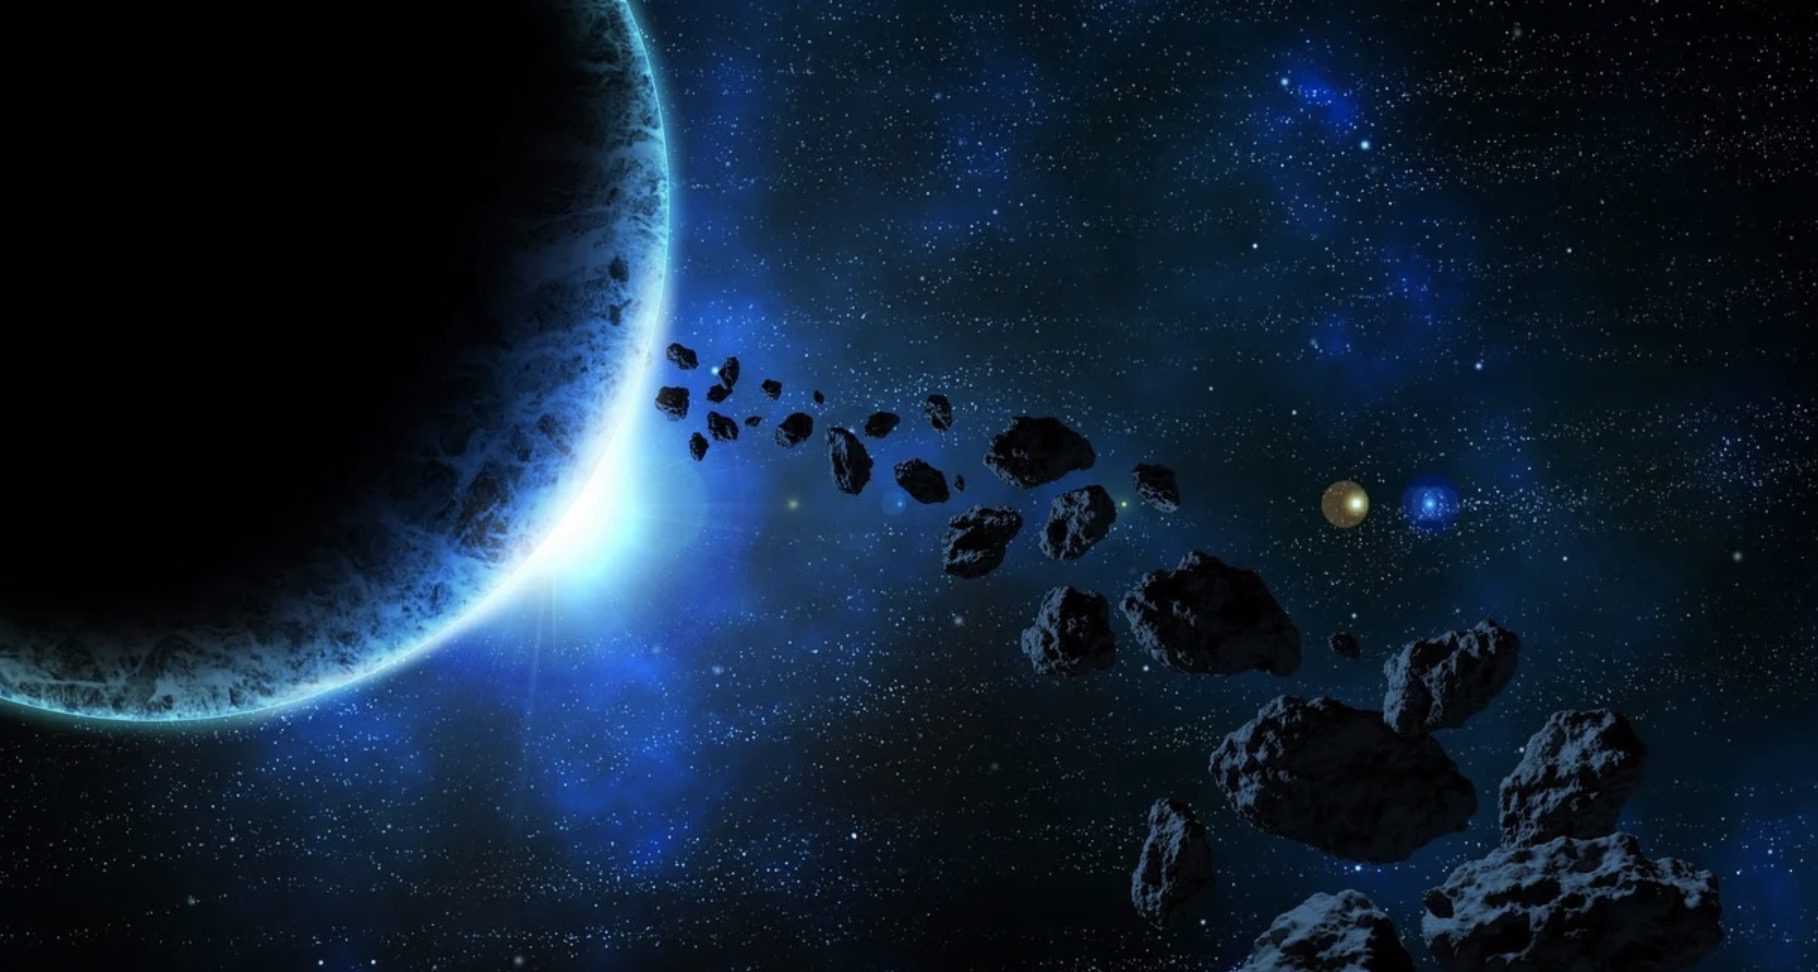 Un énorme astéroïde plus que la tour Eiffel va frôler la Terre !